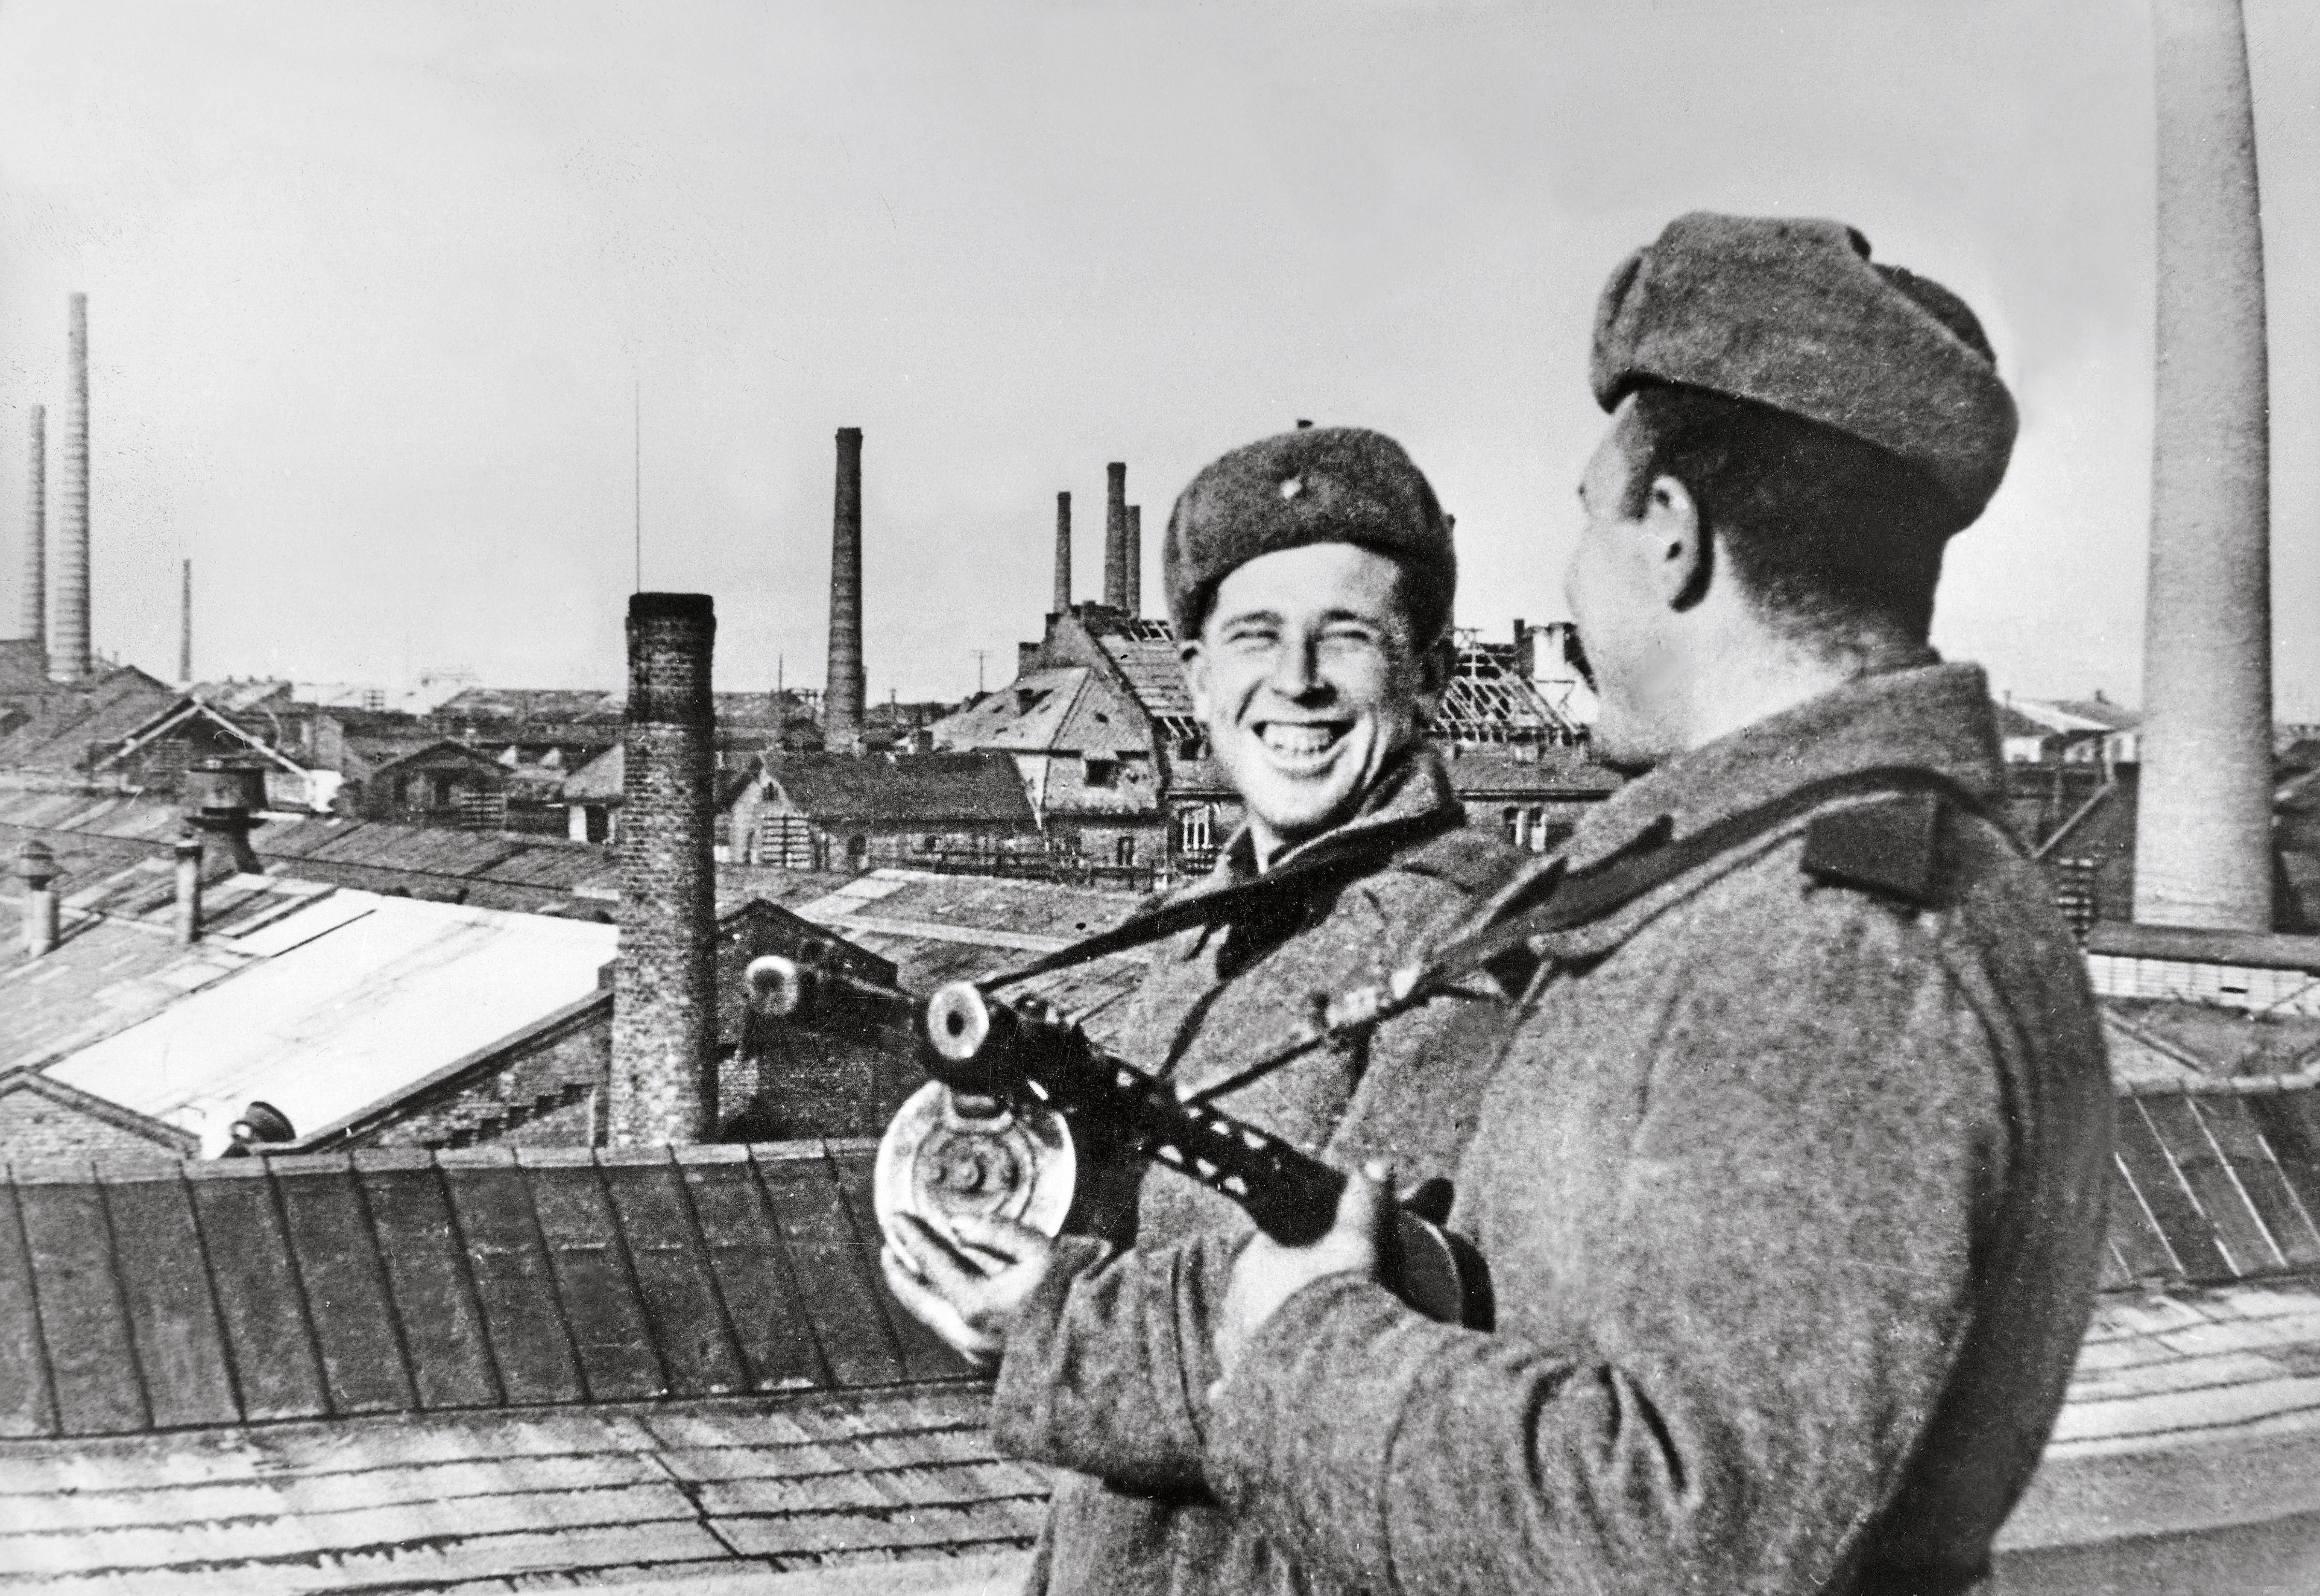 Sowieccy żołnierze pozują do zdjęcia w przemysłowej dzielnicy po zajęciu miasta, 14 lutego 1945 r.